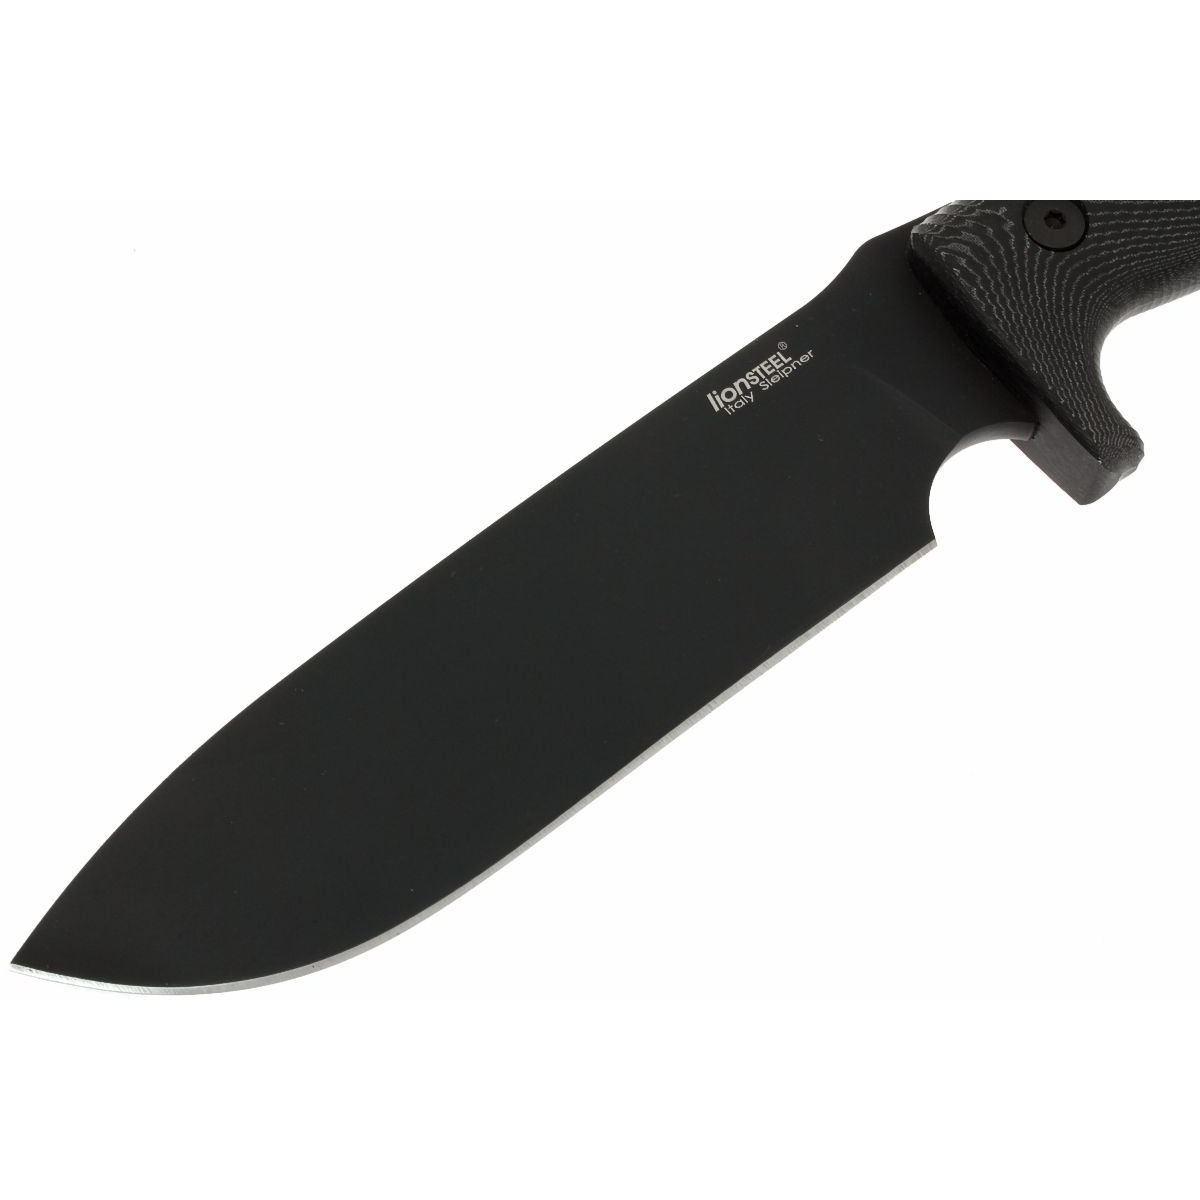 фото Нож с фиксированным клинком lionsteel m7 mb, сталь sleipner, рукоять black micarta lion steel